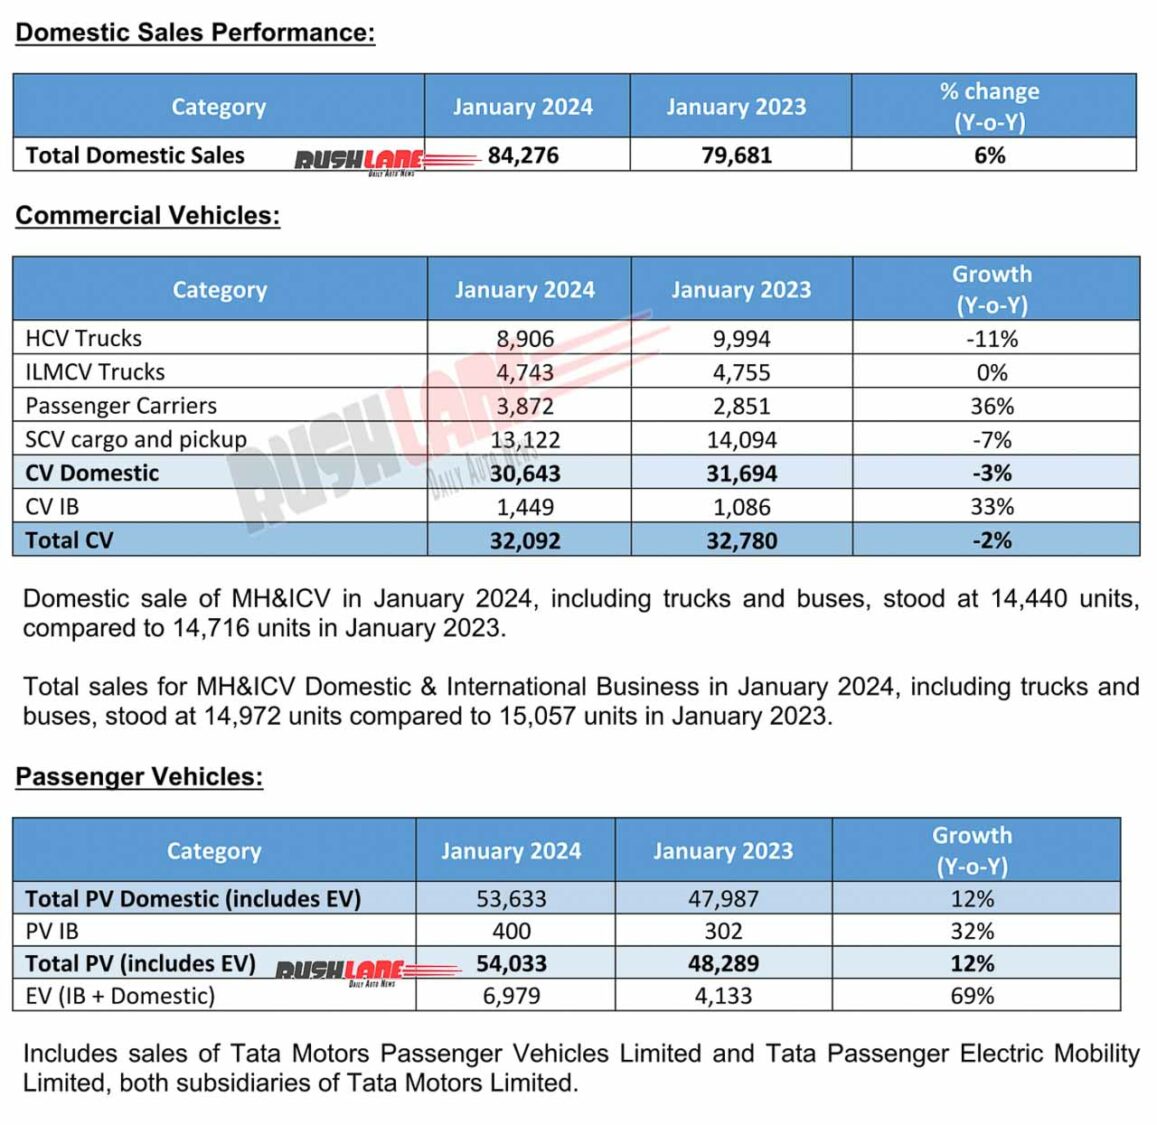 Tata Car Sales Jan 2024 at 54k Growing 12 CVs at 32k